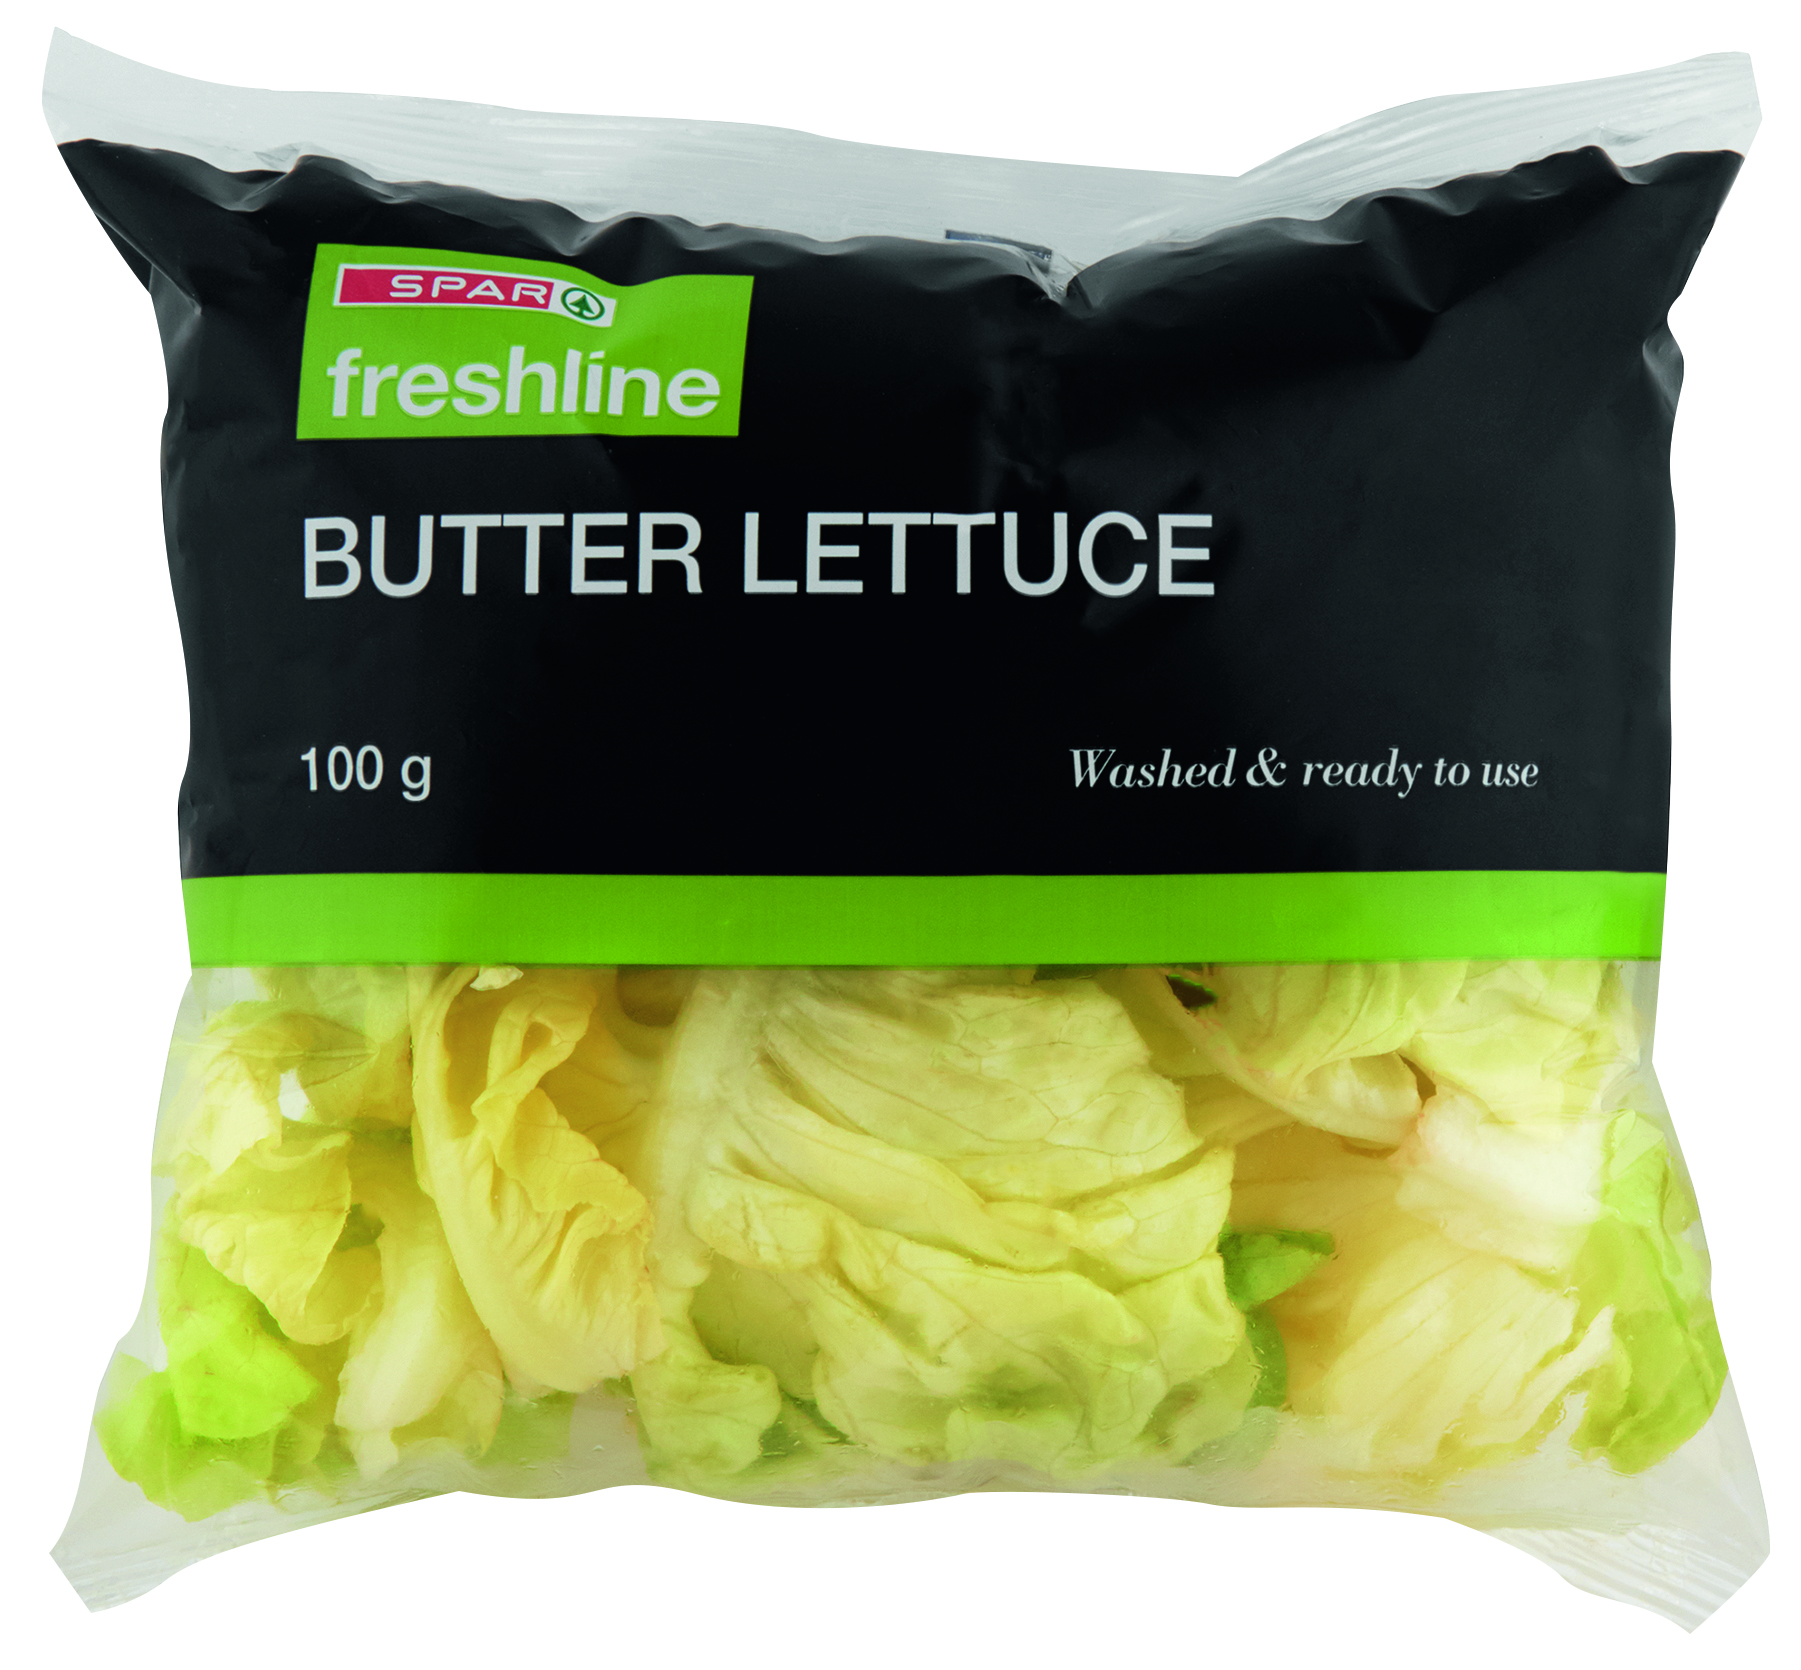 freshline butter lettuce 